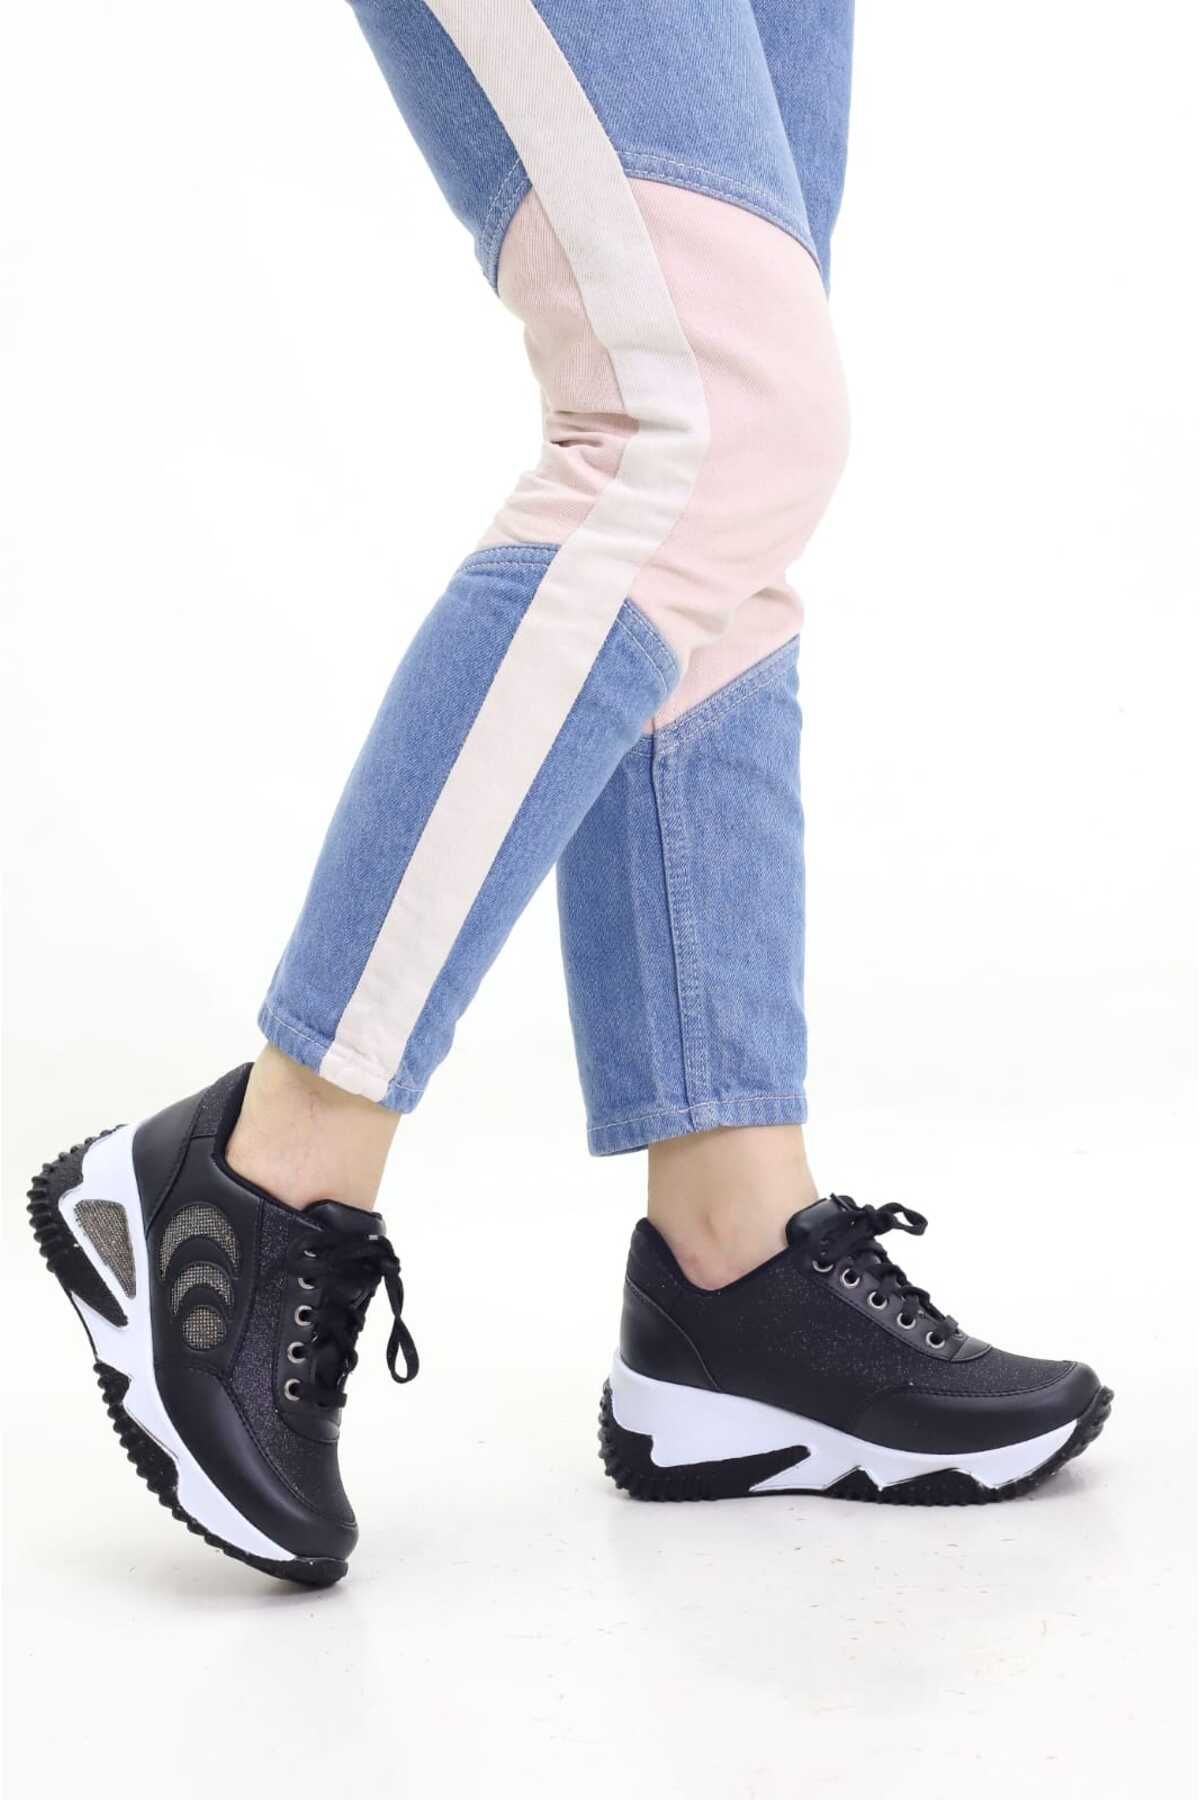 Weynes Kadın Siyah Simli Taşlı Gizli Topuk Spor Ayakkabı Wsb0726